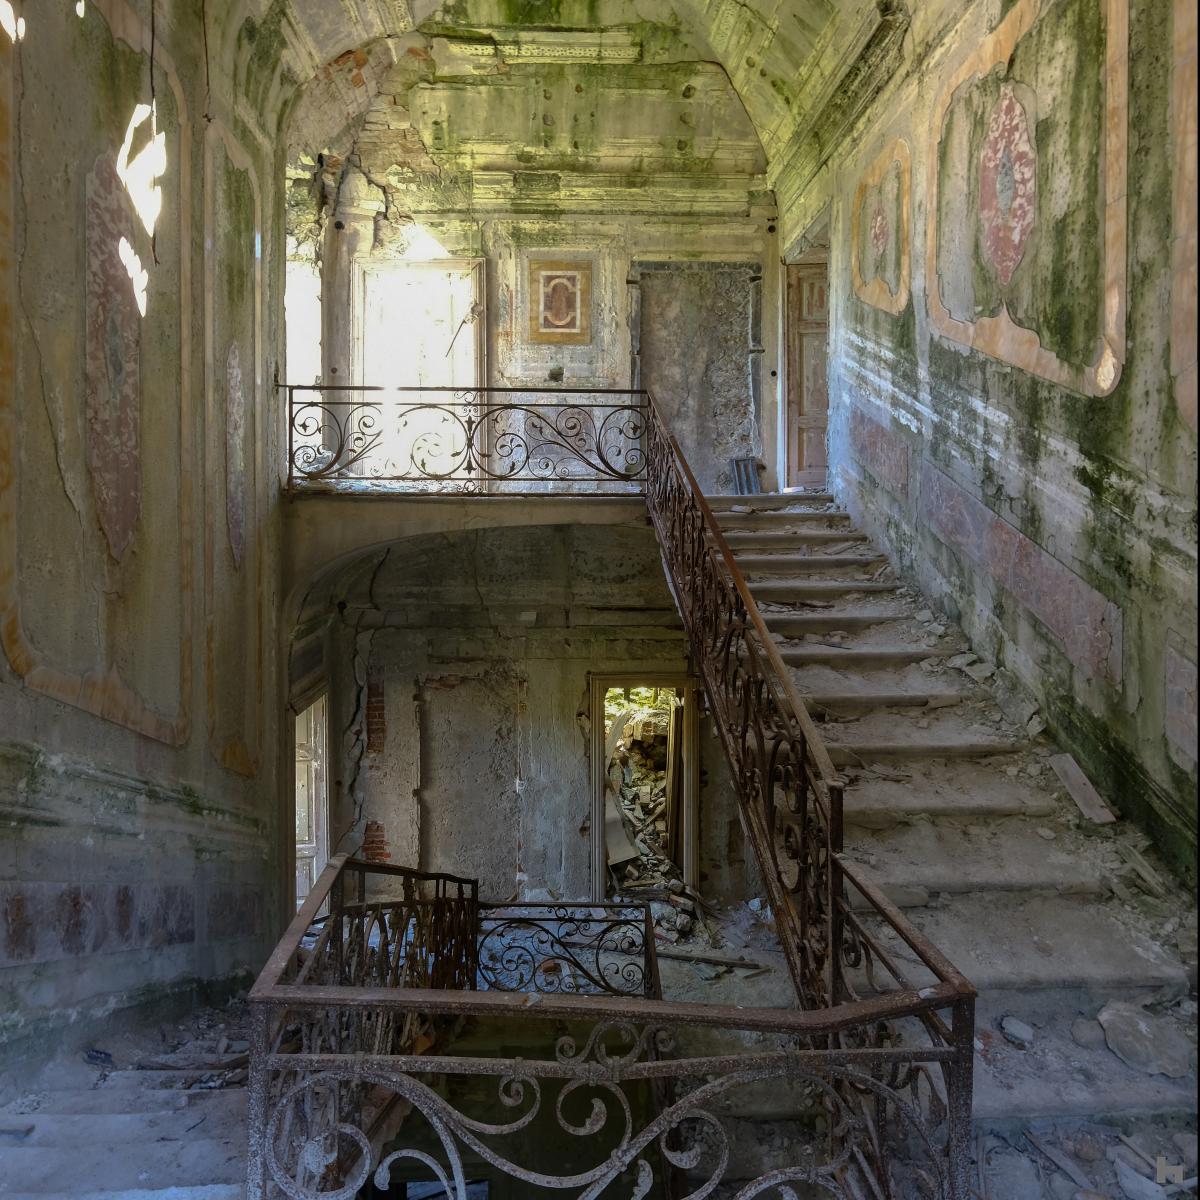 Photographie d'une villa abandonnée.Escalier en ruines;Lac Majeur